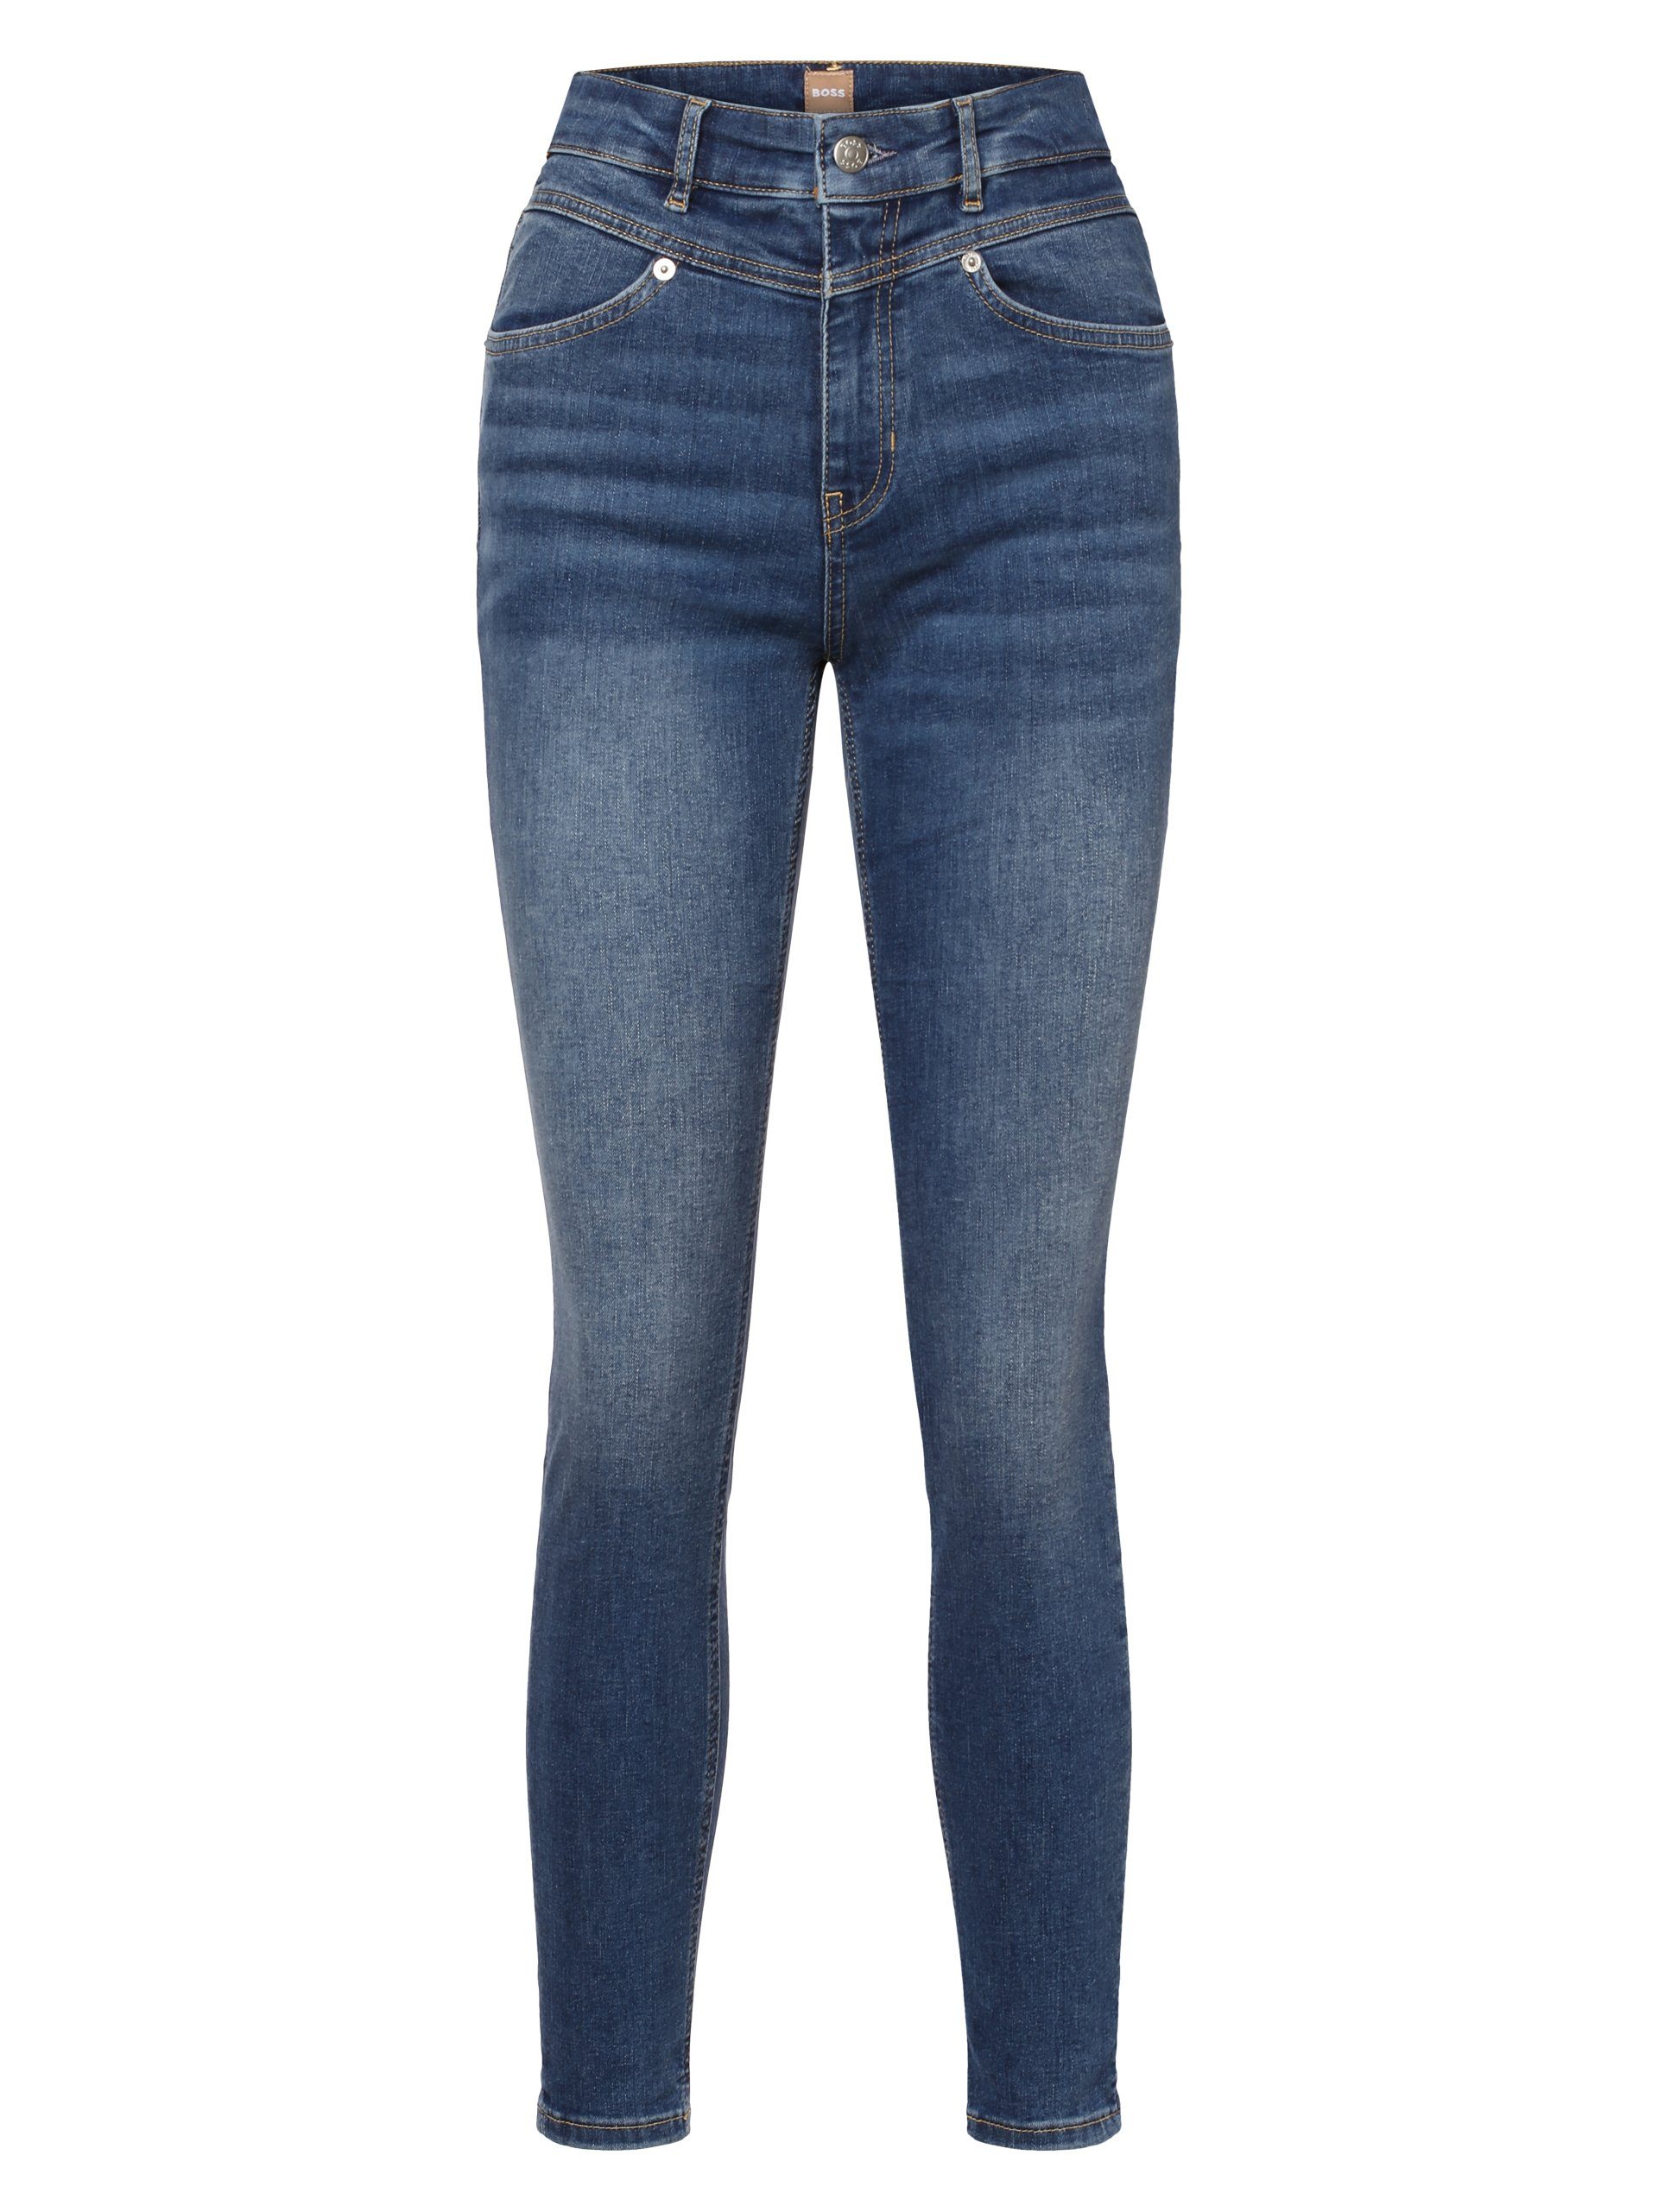 Kitt ORANGE Skinny-fit-Jeans BOSS The